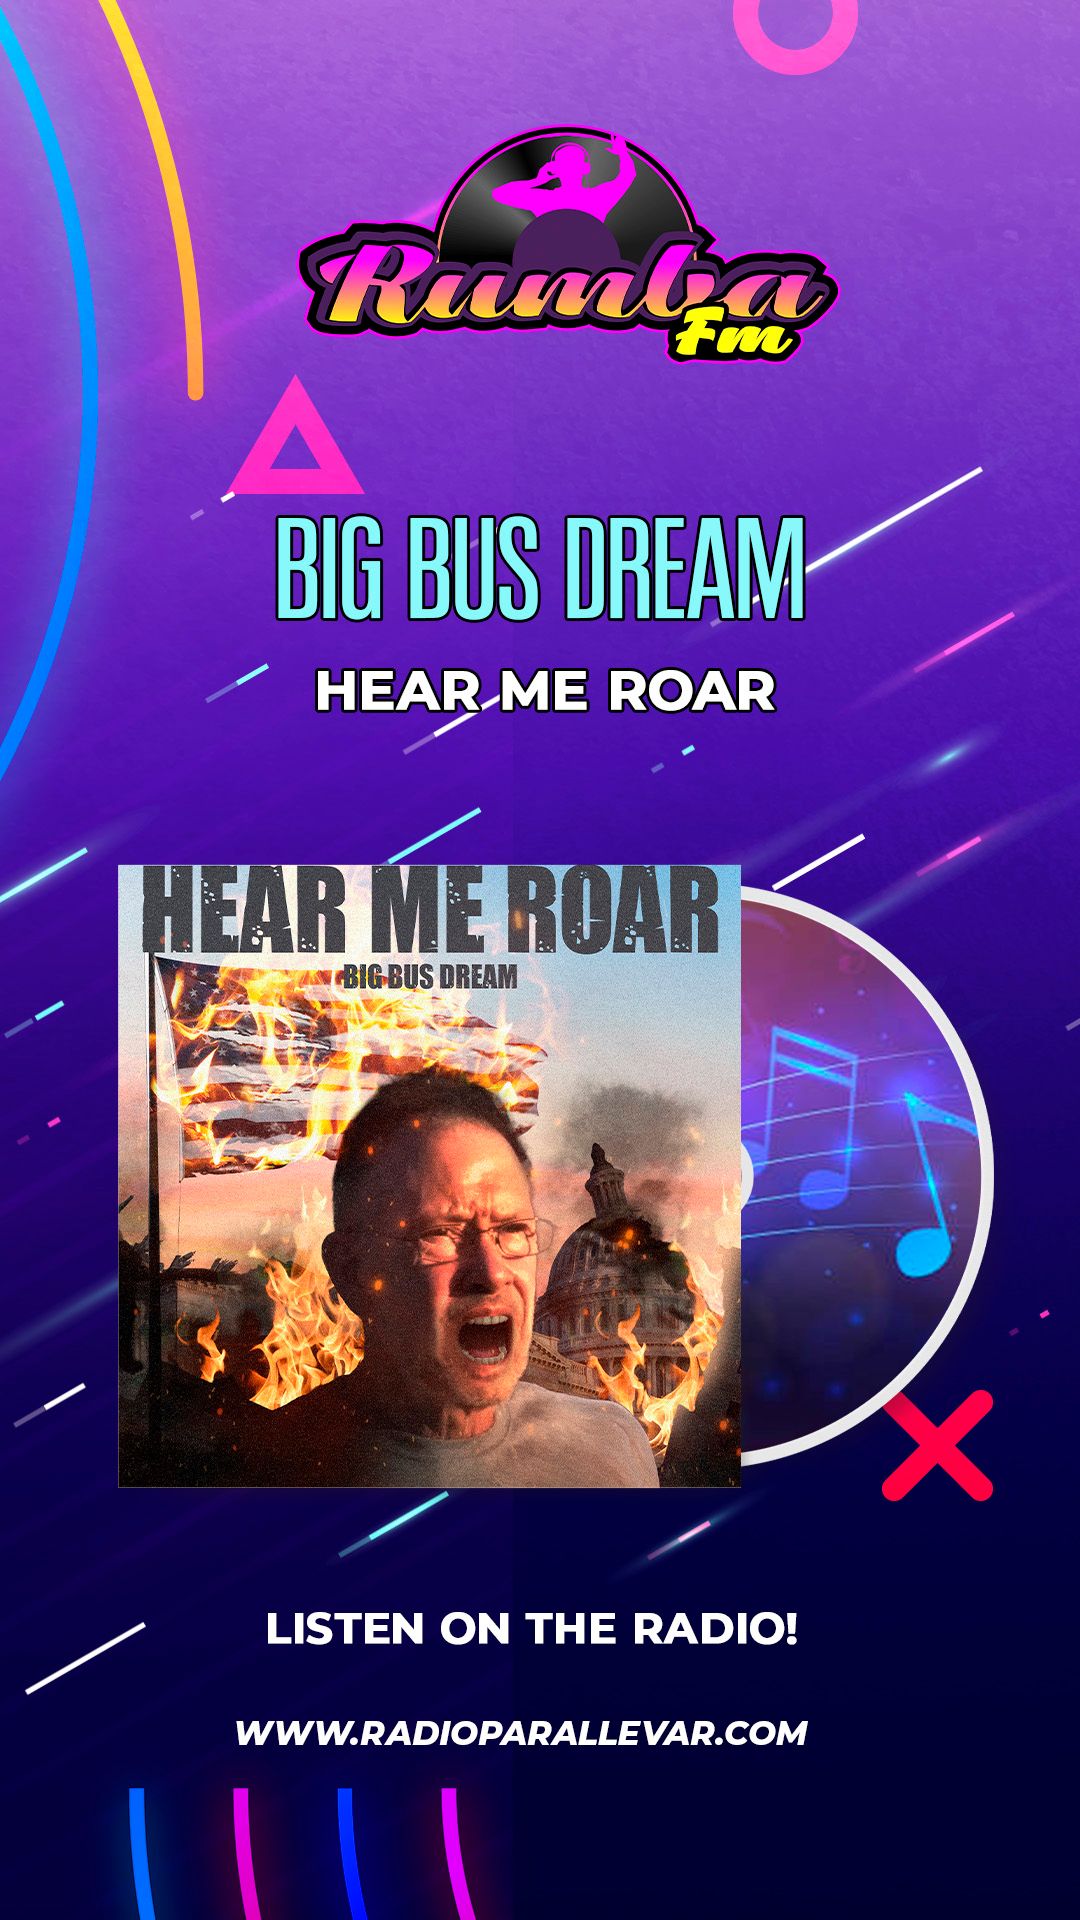 Hear Me Roar as heard on Rumba FM - the broadcast is featured